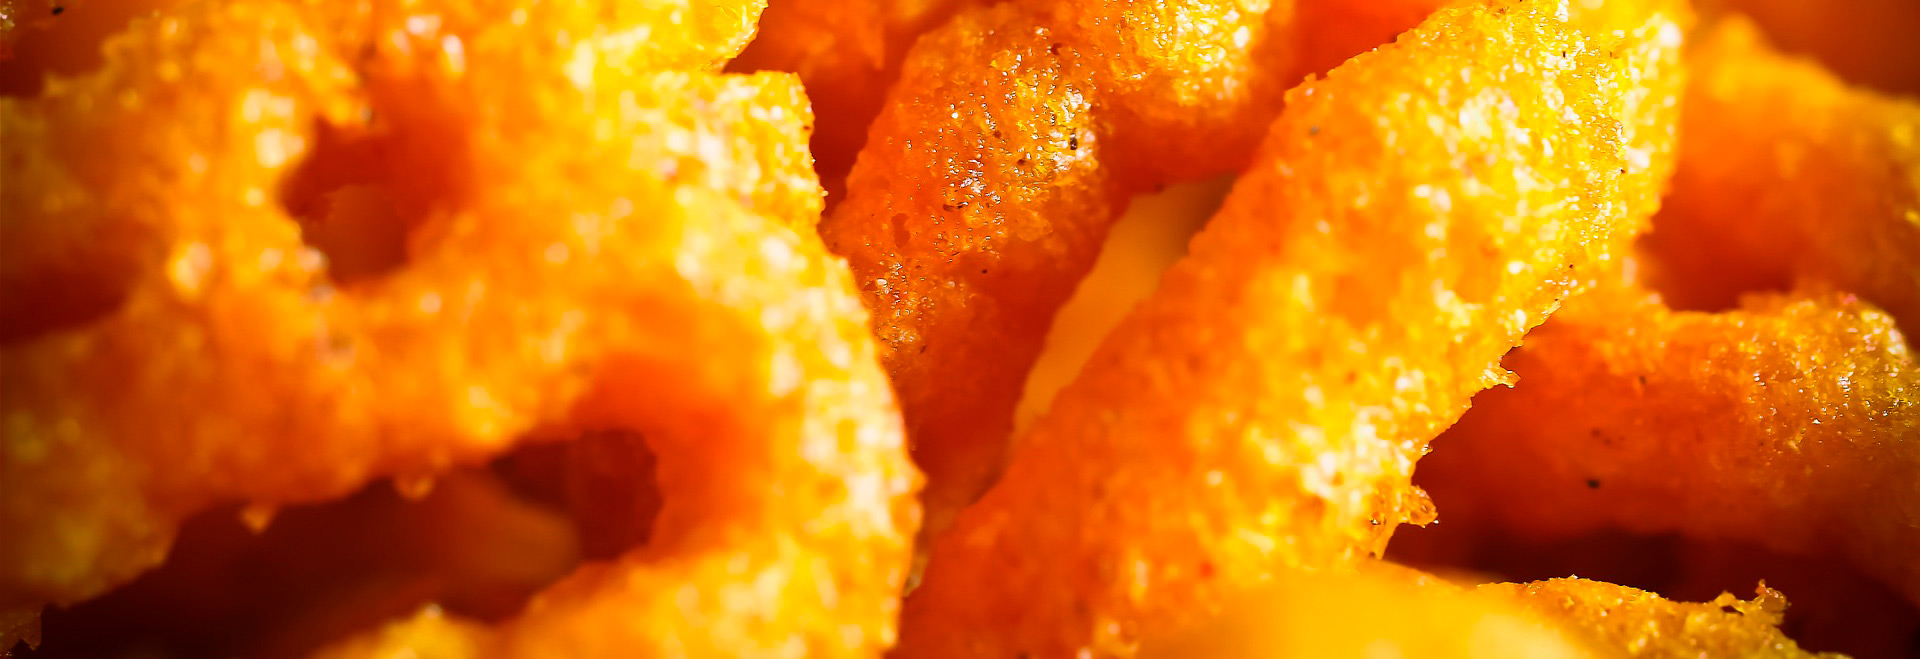 Audiodescrição: em imagem close-up, alimentos fritos em tons amarelados e alaranjados. A imagem é muito aproximada, dificultando identificar qual é o alimento, mas que se assemelha a algum tipo de salgadinho. Imagem 1 de 1.